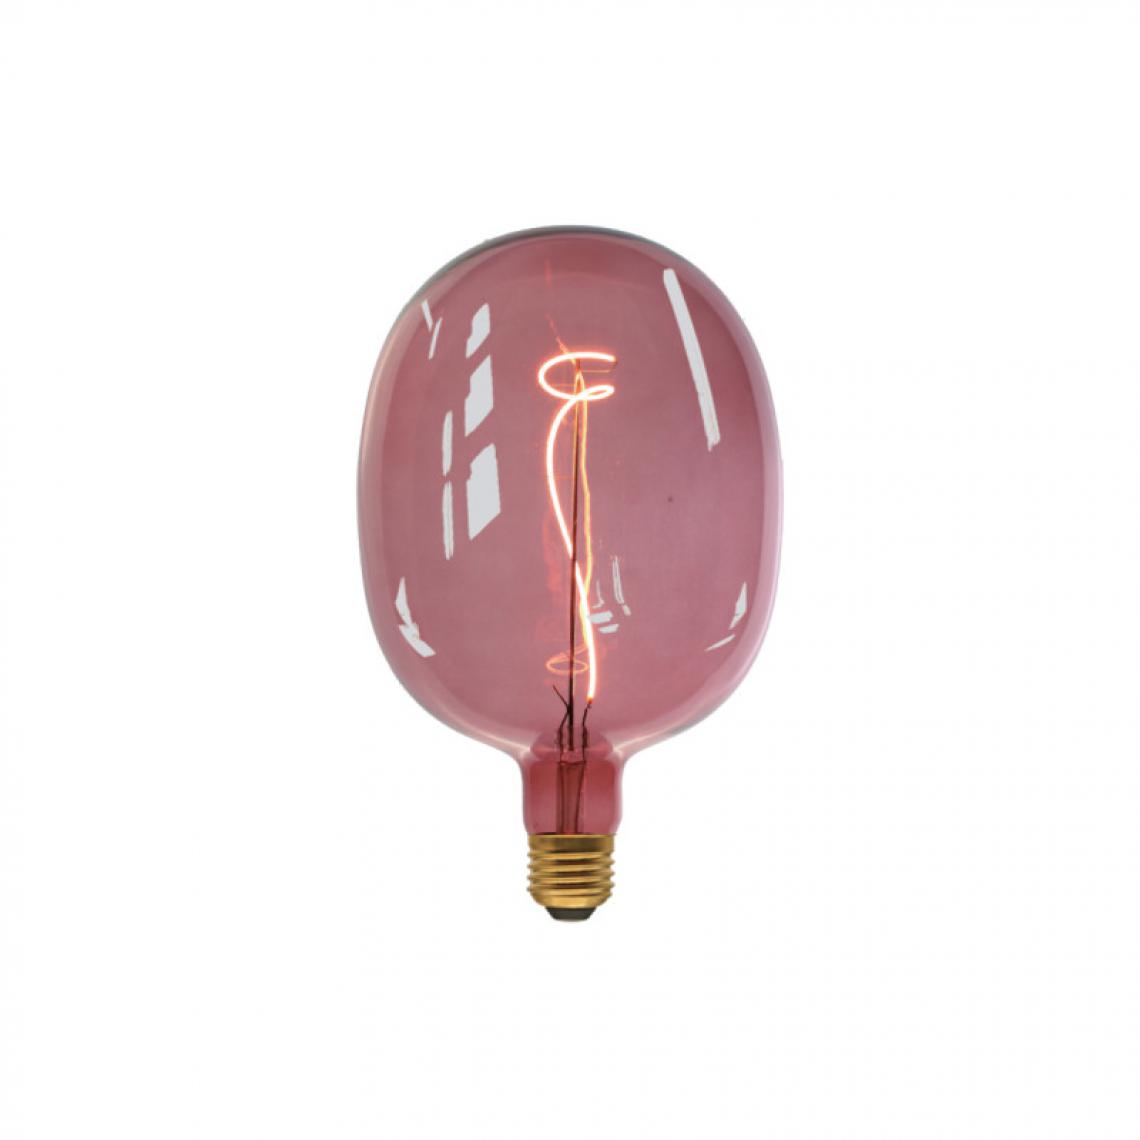 Xxcell - Ampoule LED rose dégradée XXCELL - 4 W - 200 lumens - 3000 K - E27 - Ampoules LED